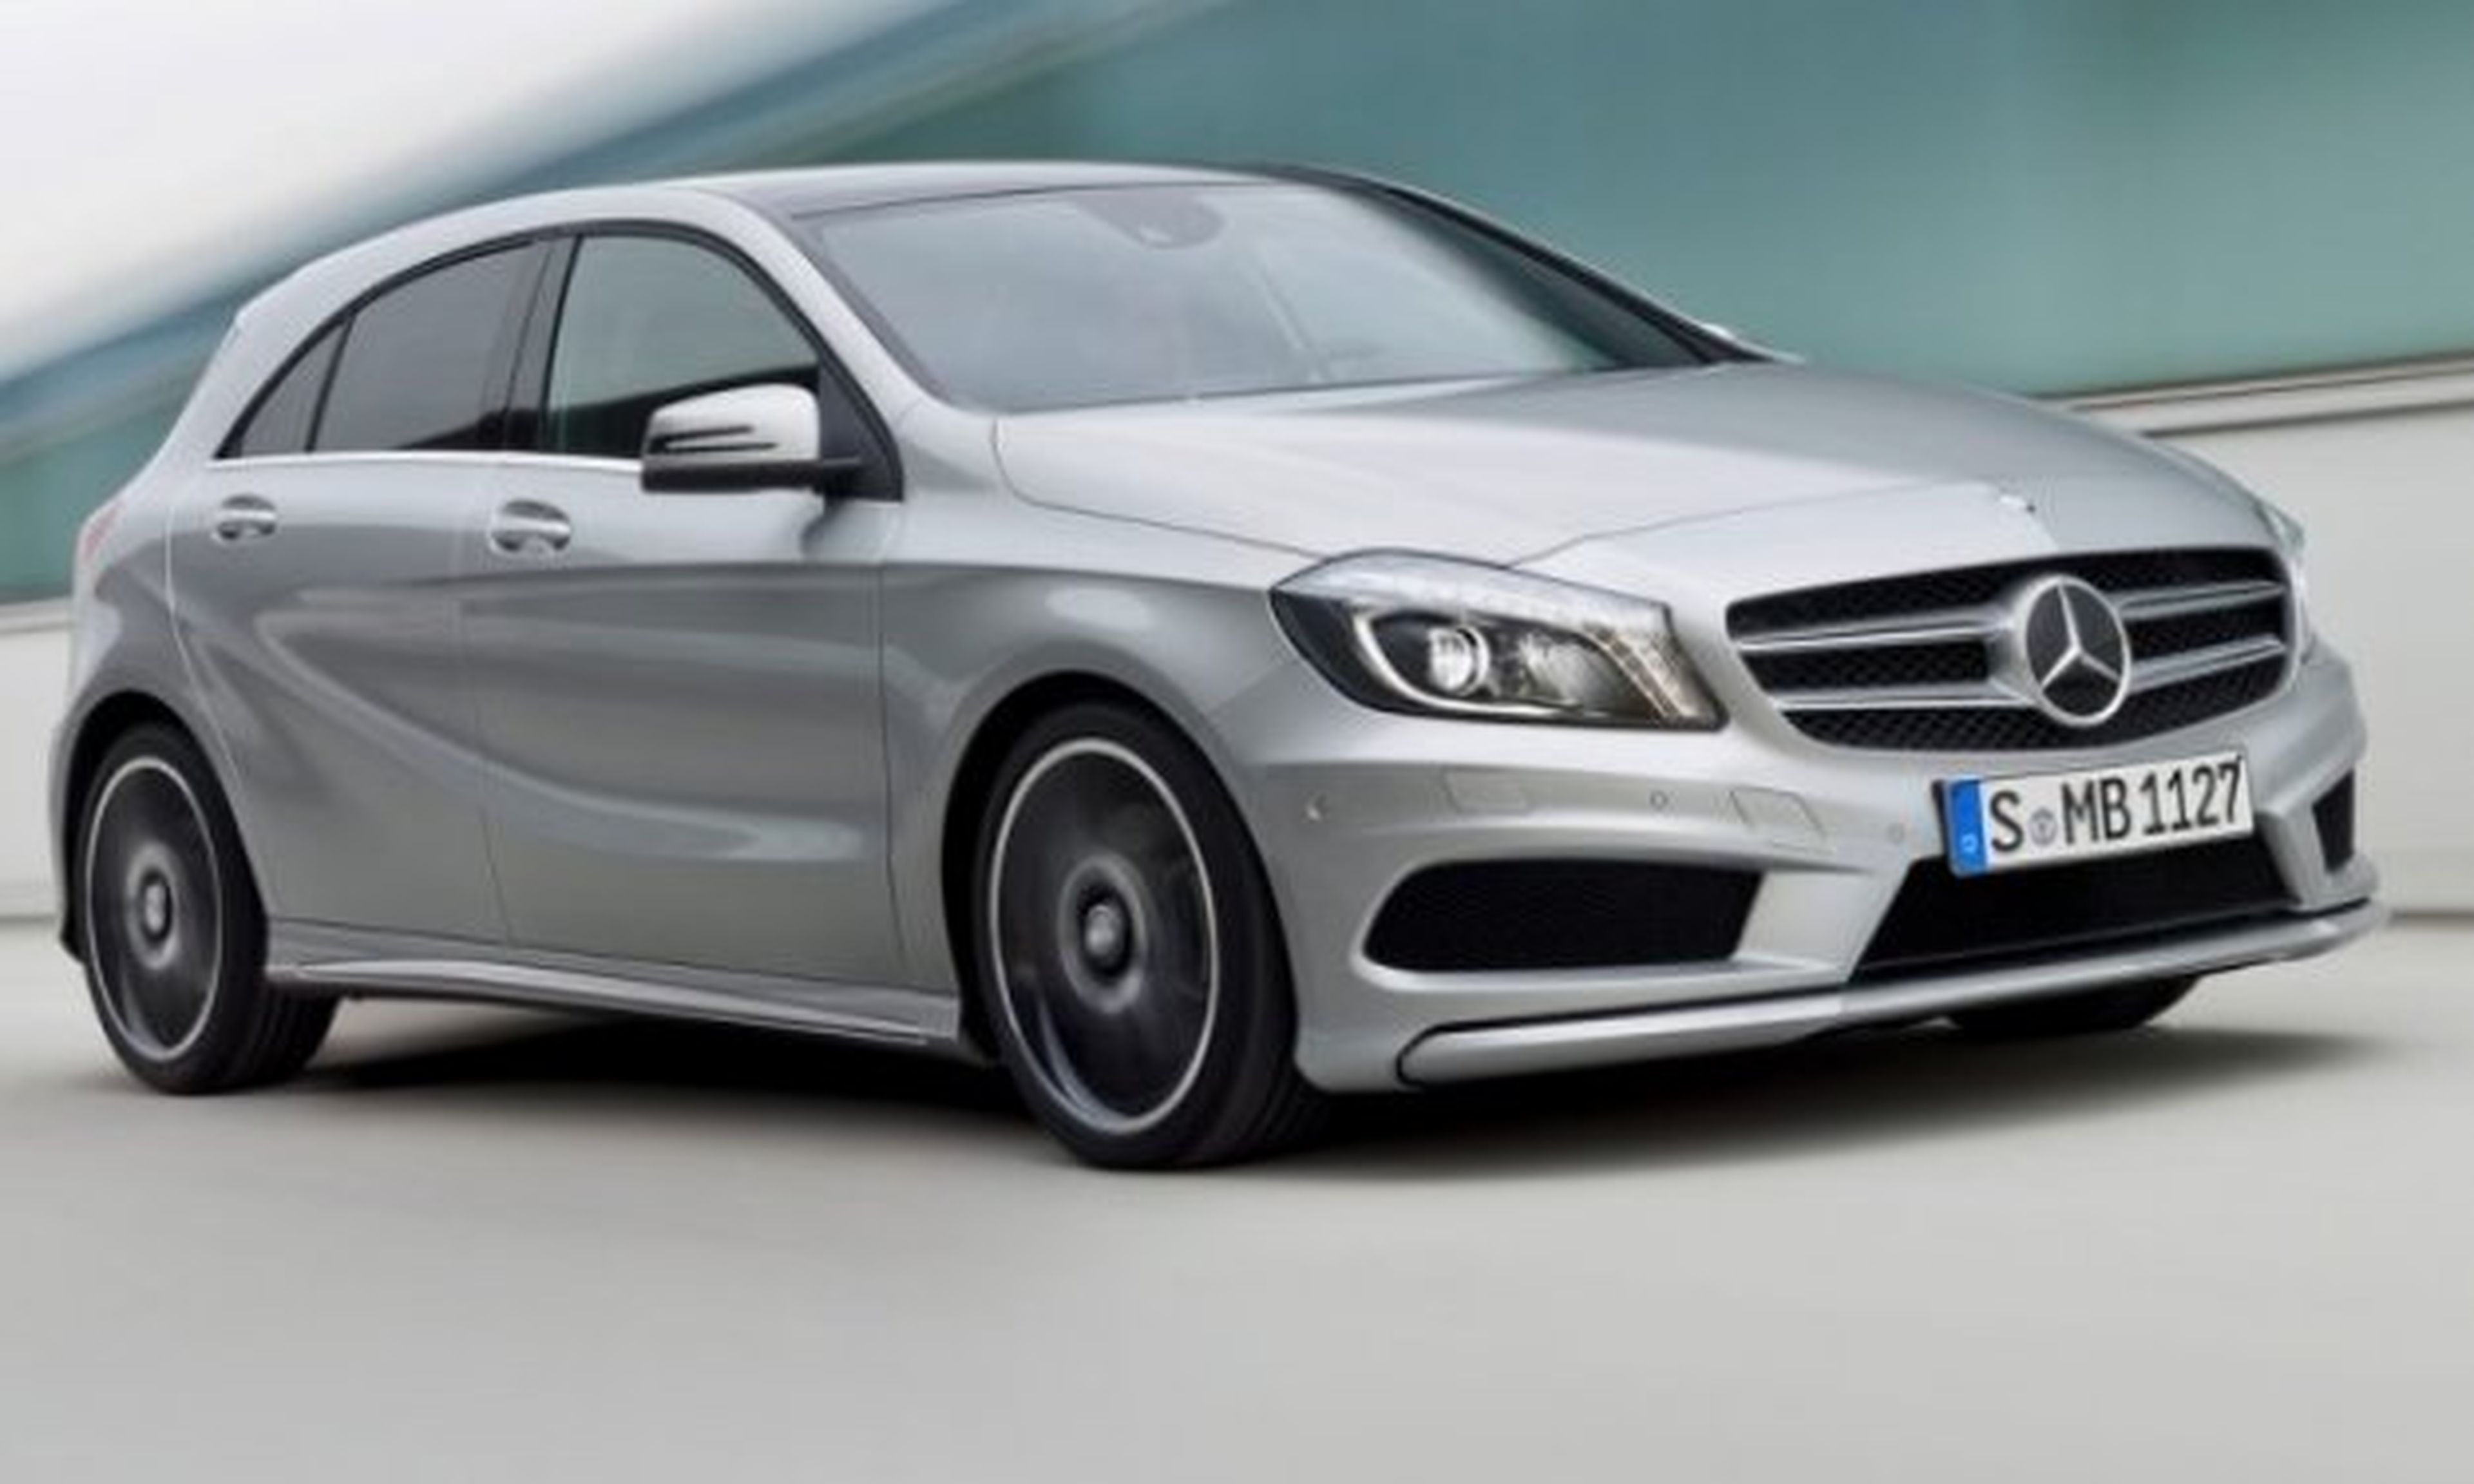 Ya hay precios del Mercedes Clase A 2012: desde 25.500 €